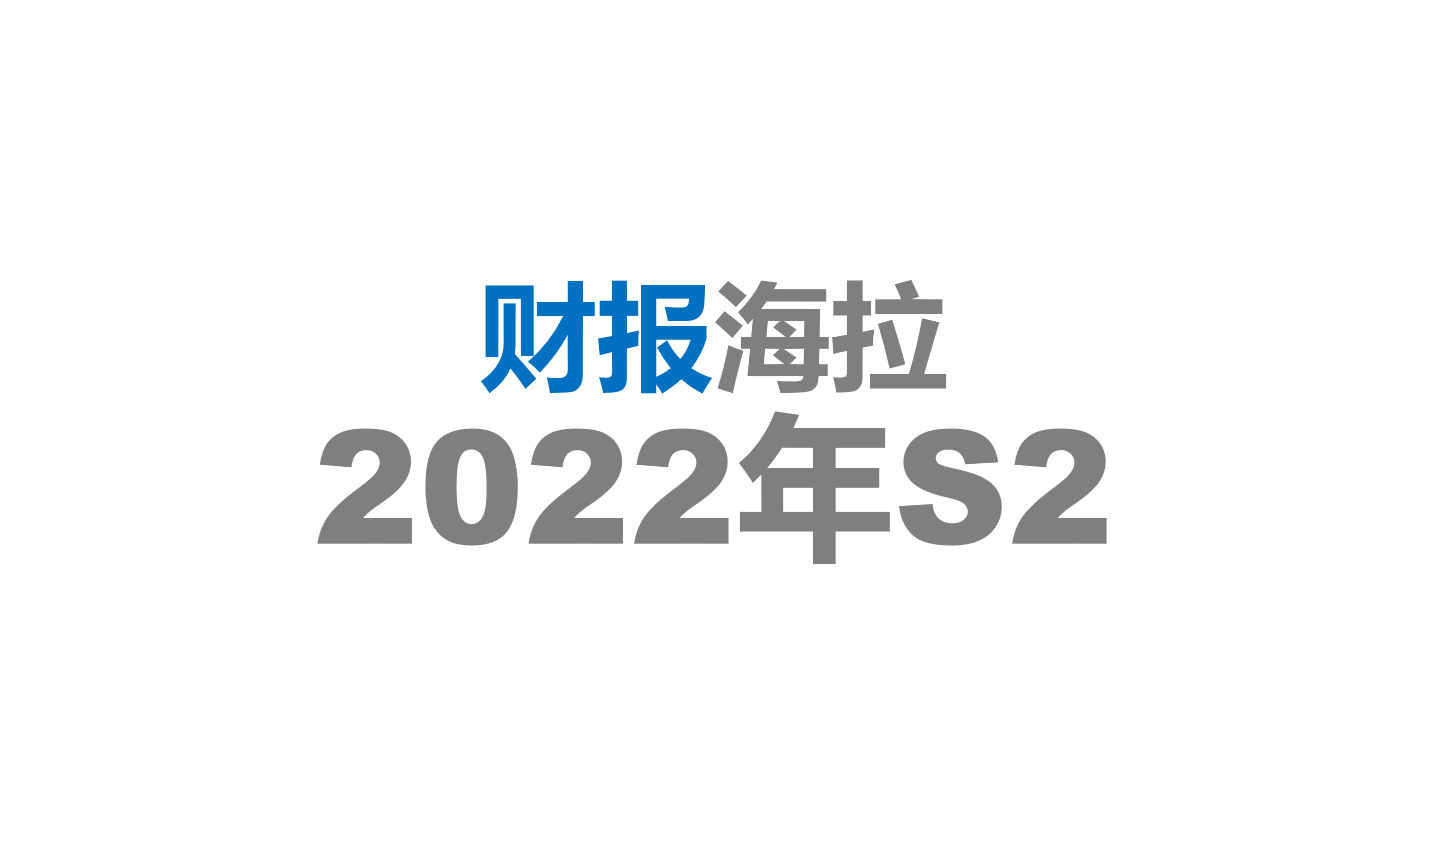 2022年S2 海拉财报